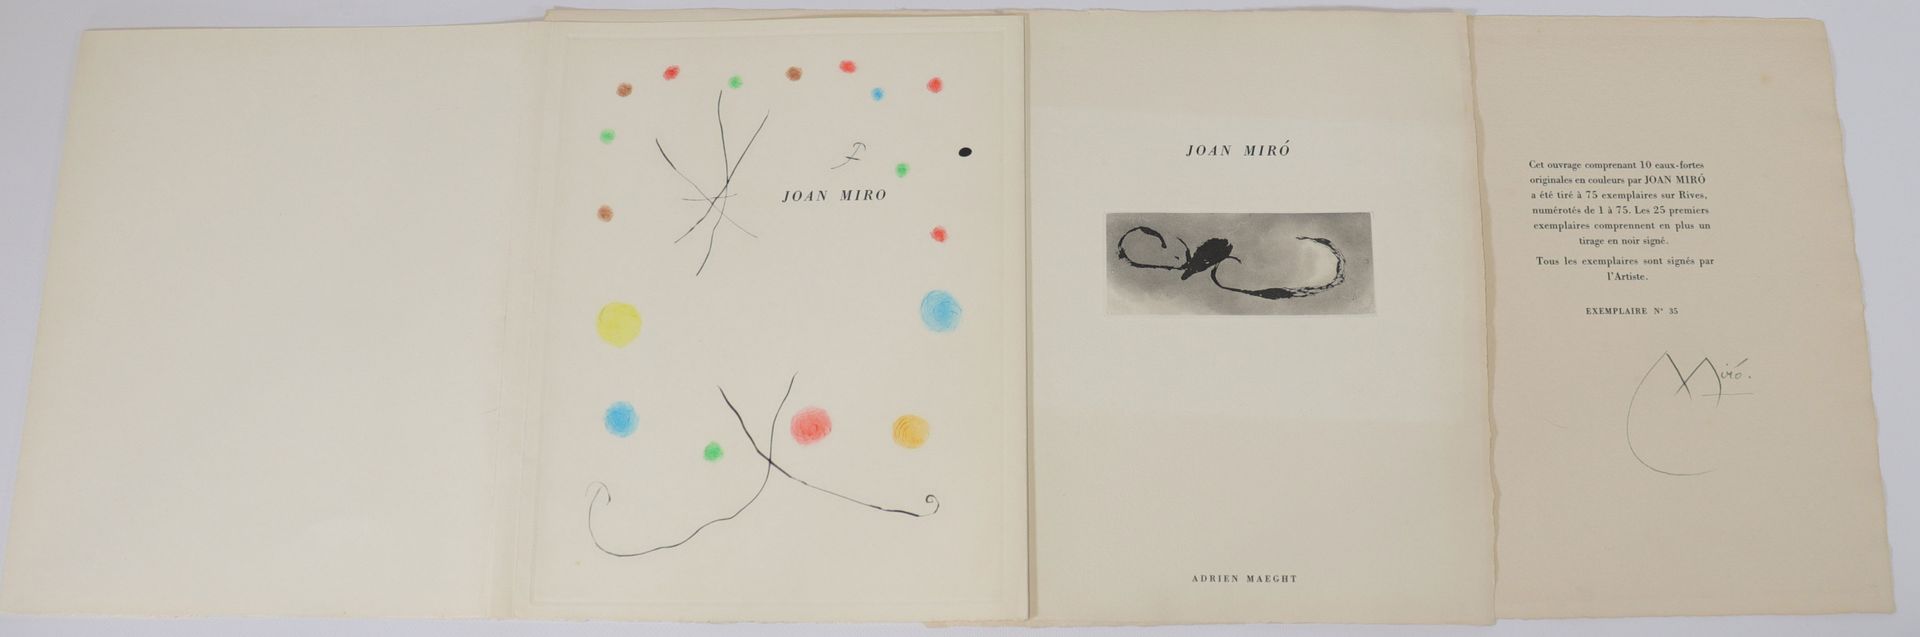 Joan Miró – 3 pièces (eaux fortes) Joan Miró - 3 pieces (etchings)
Period: Xxth
&hellip;